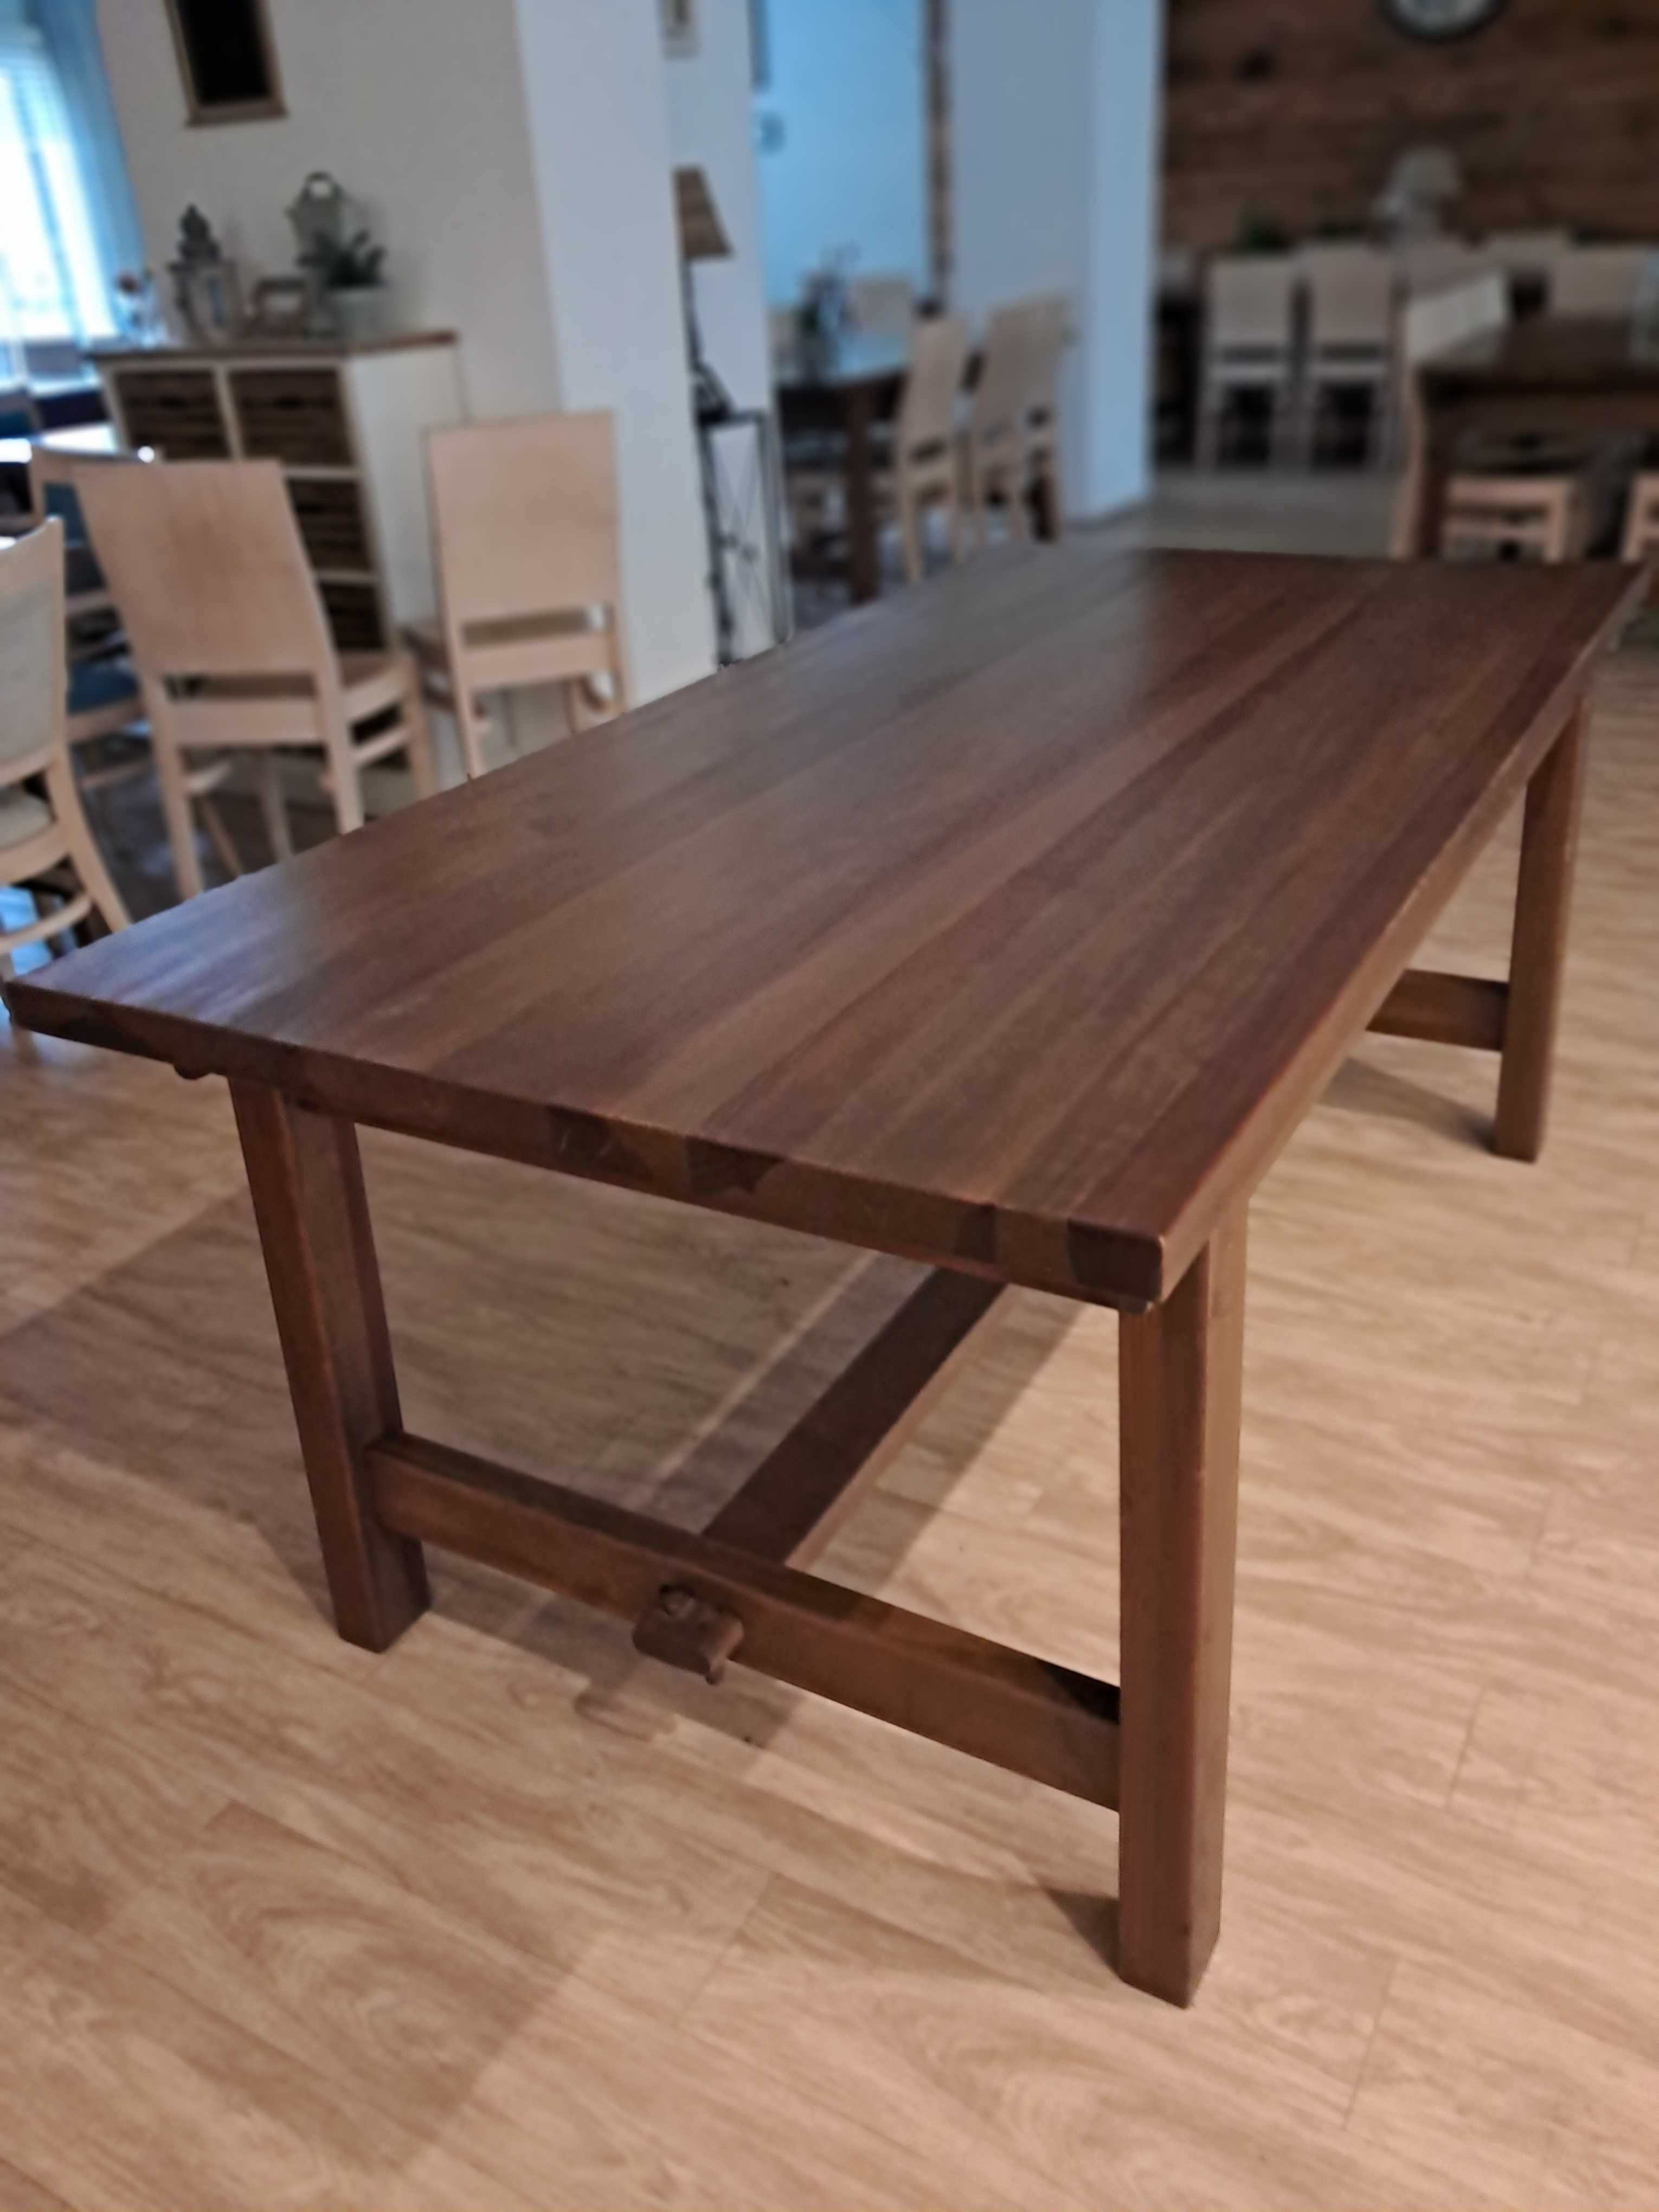 Stół drewniany czteroosobowy lub sześcioosobowy